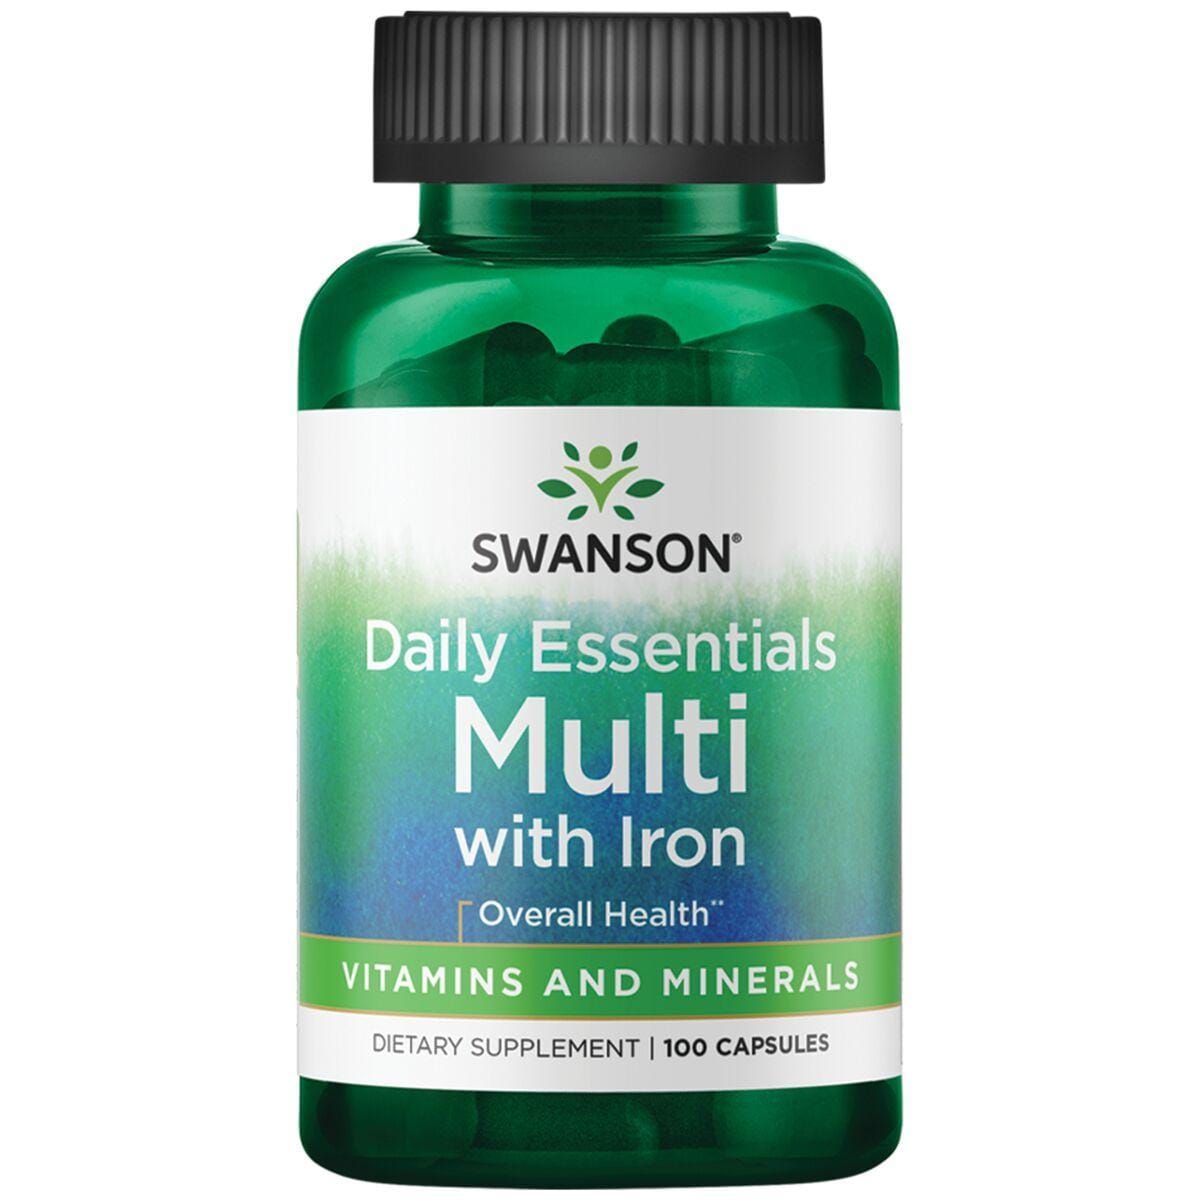 Swanson Premium Daily Essentials Multi - with Iron Vitamin 100 Caps